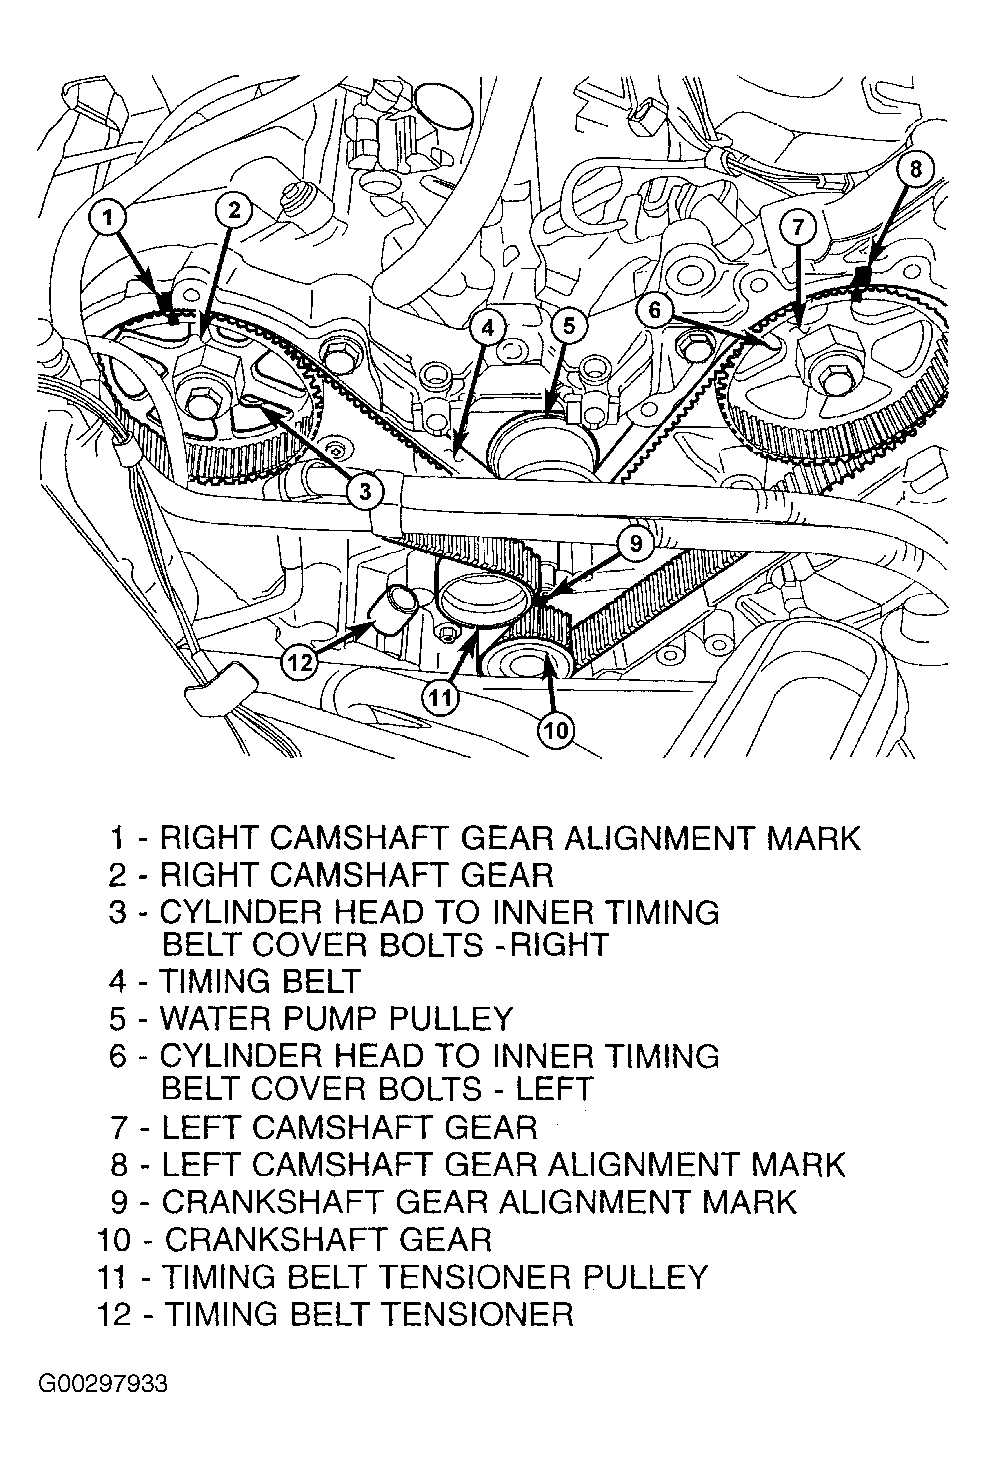 2002 pt cruiser serpentine belt diagram